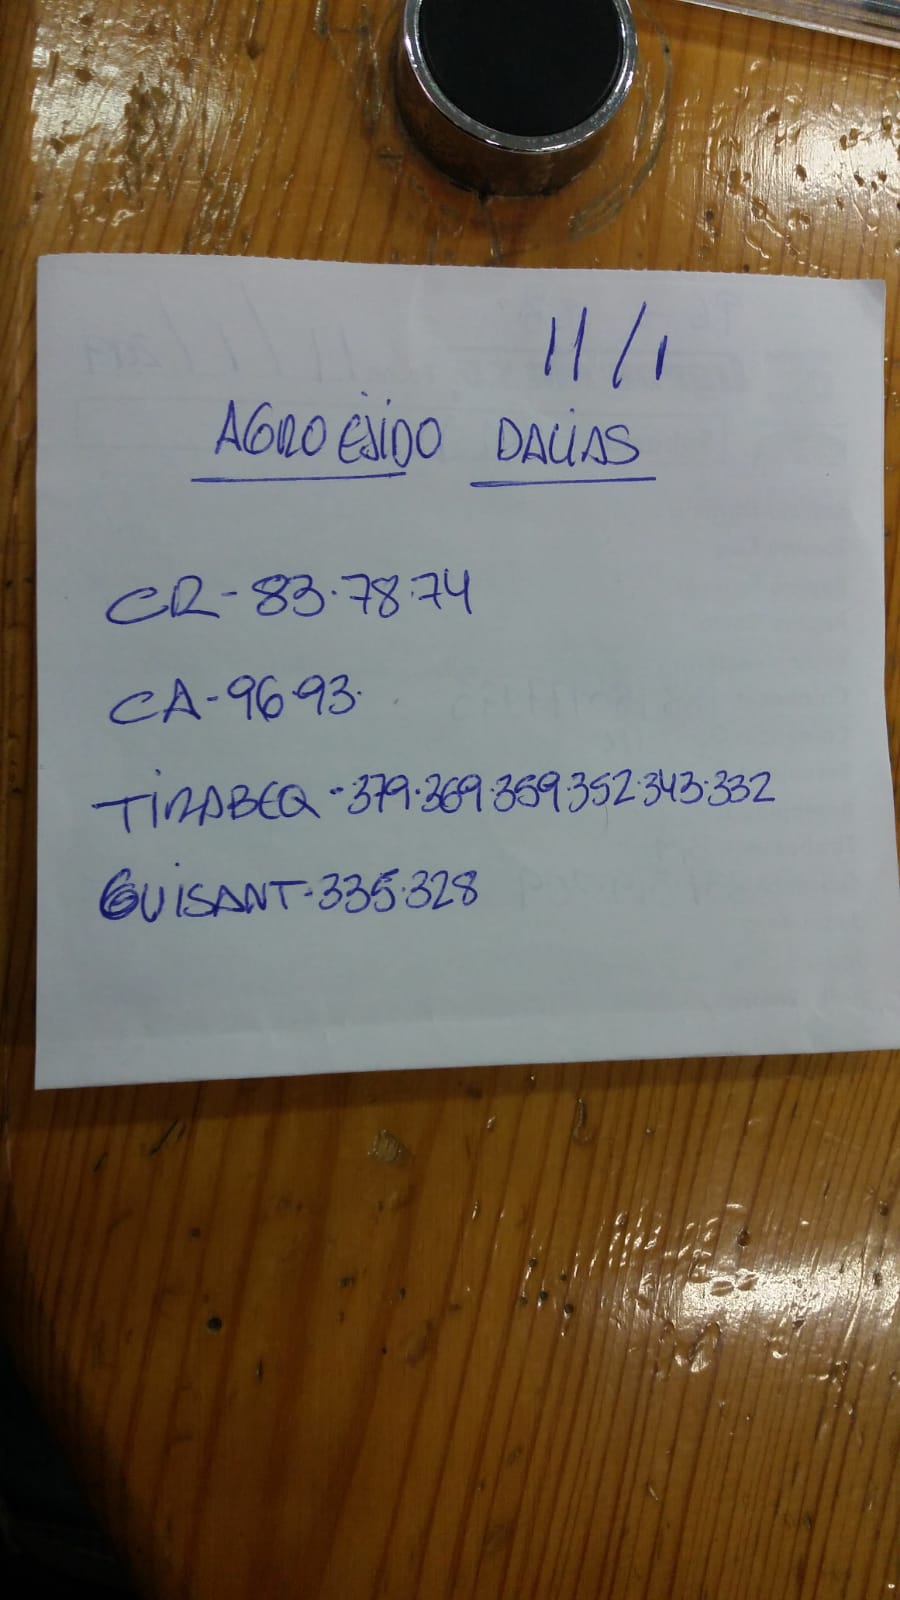 Subasta hortofrutícola AgroEjido Dalias 11 de Enero 2019